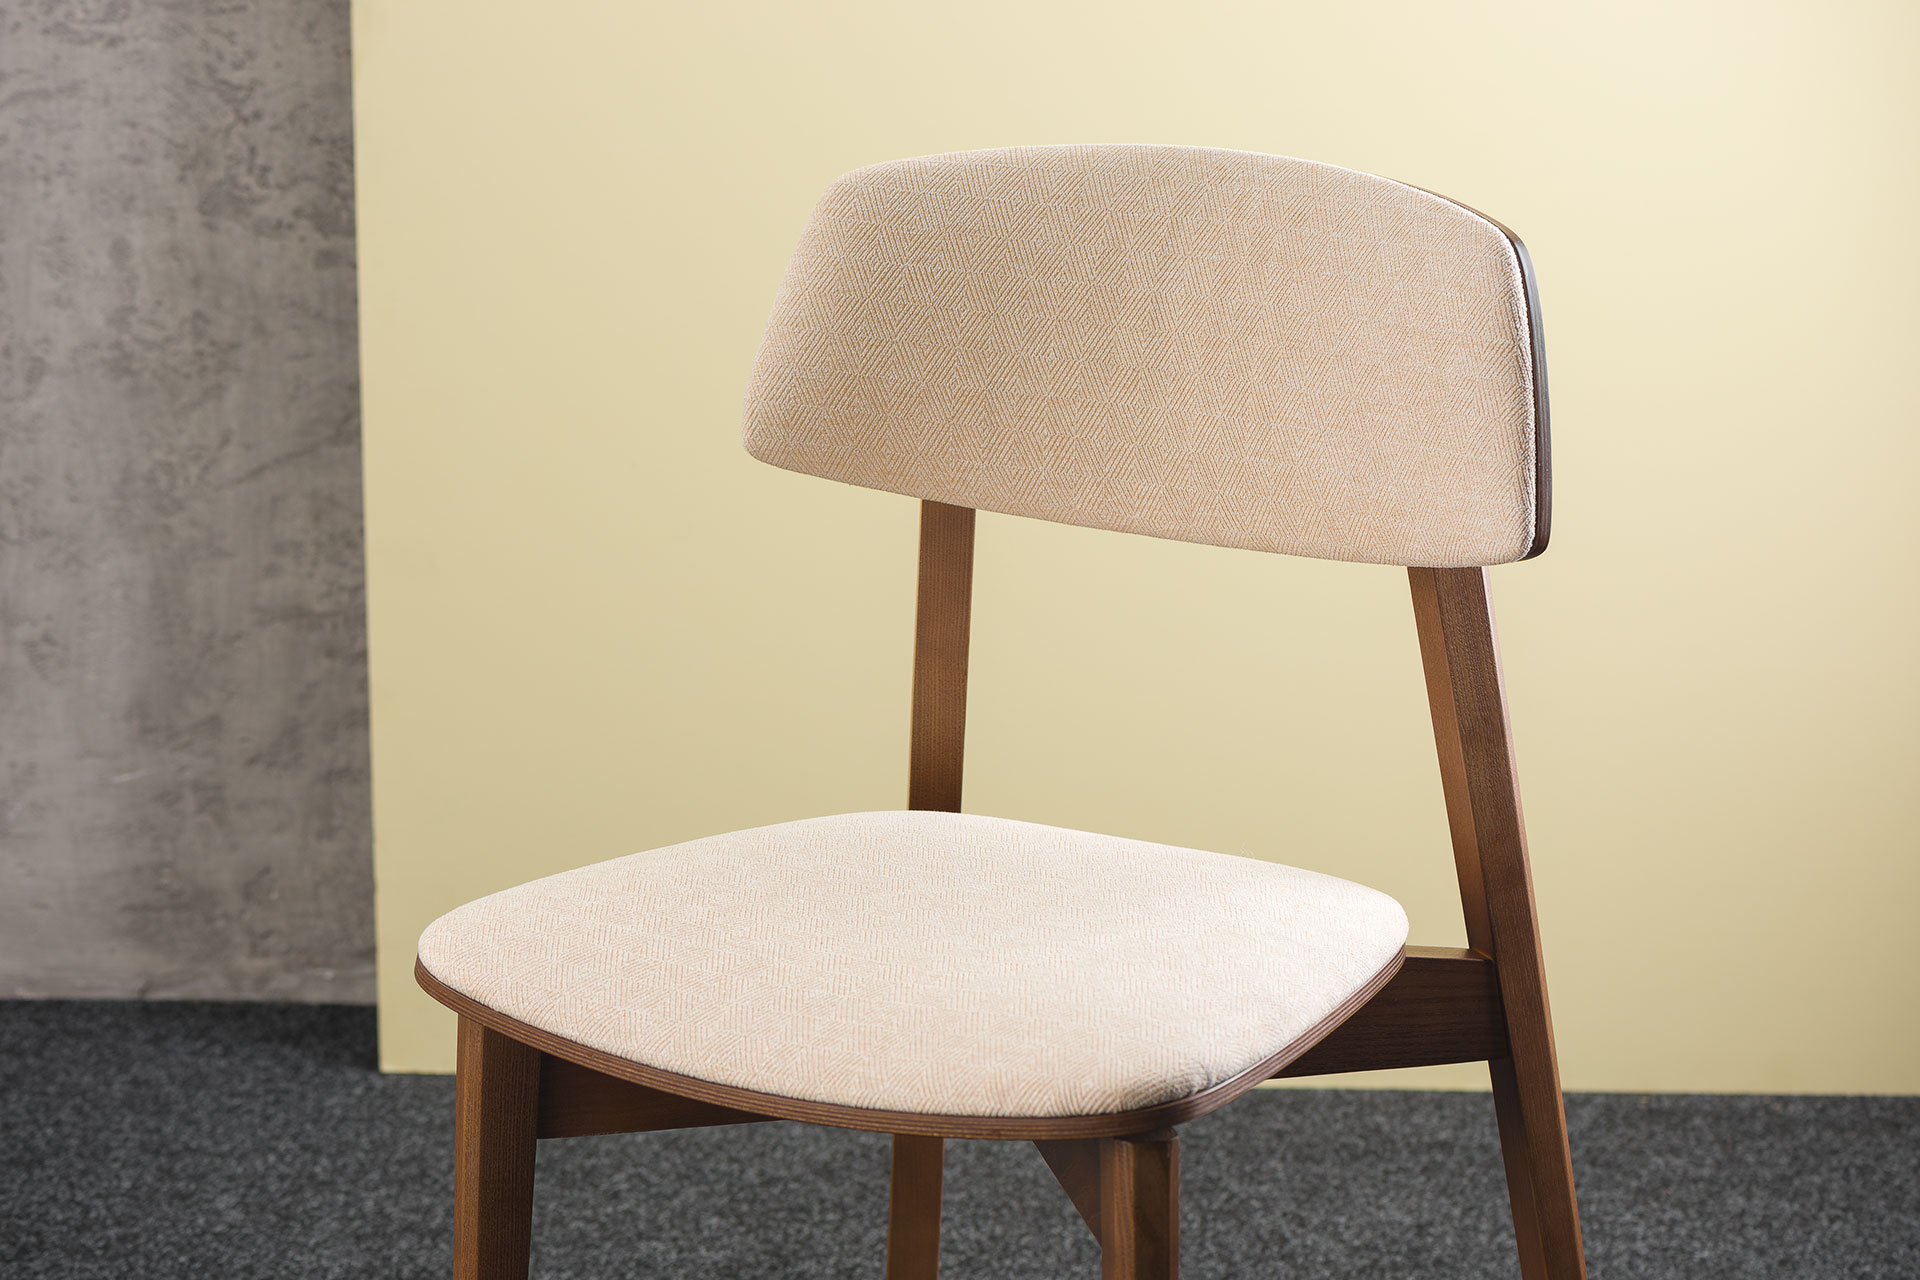 Кухонный стул "Орто обновленный" - мягкое сиденье и спинка, бежевая обивка рогожка Unitex Madrid 3 (вид с боку)